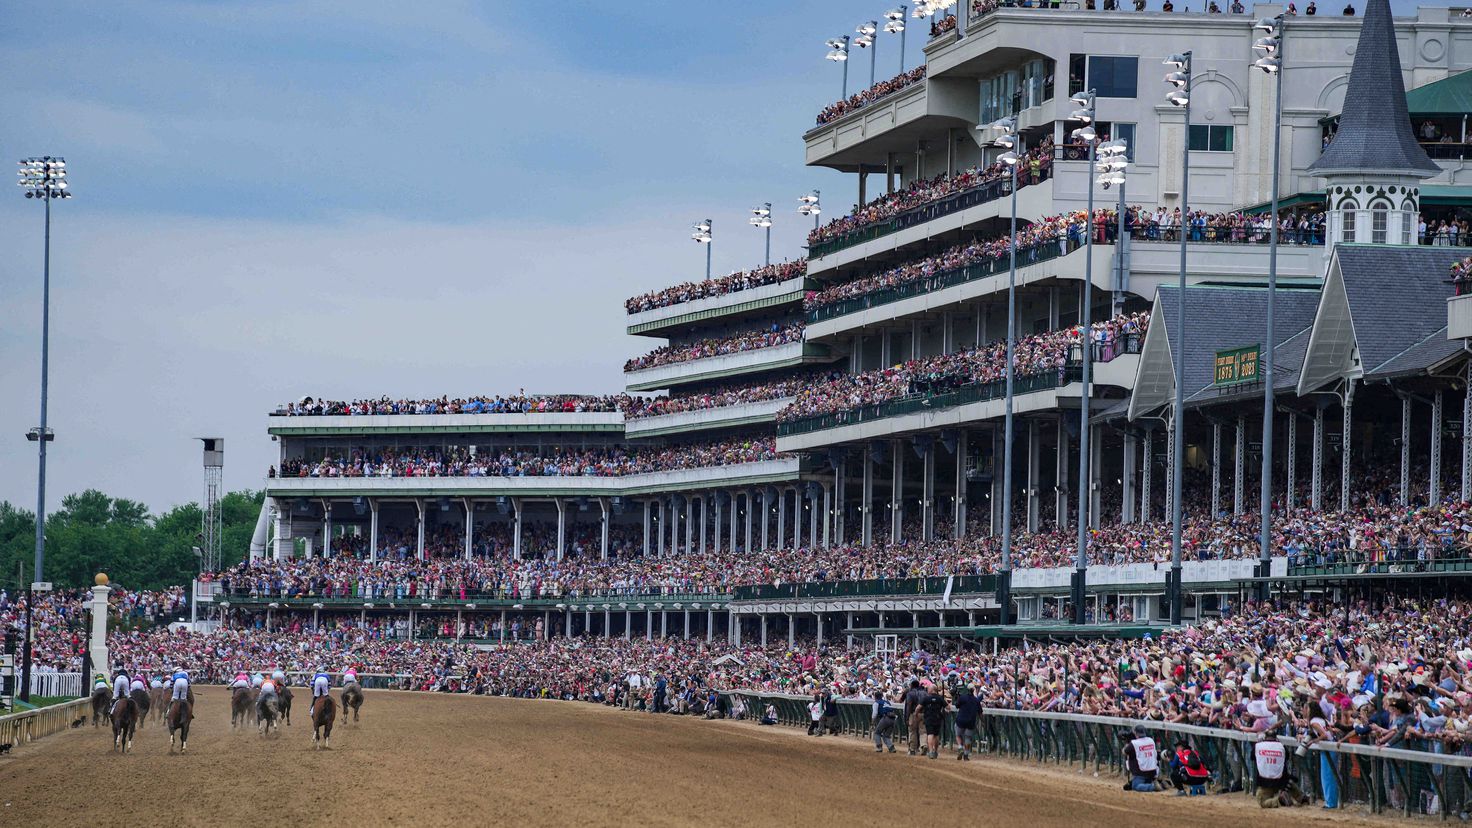 Kentucky Derby racetrack suspends racing after 12 horses die
